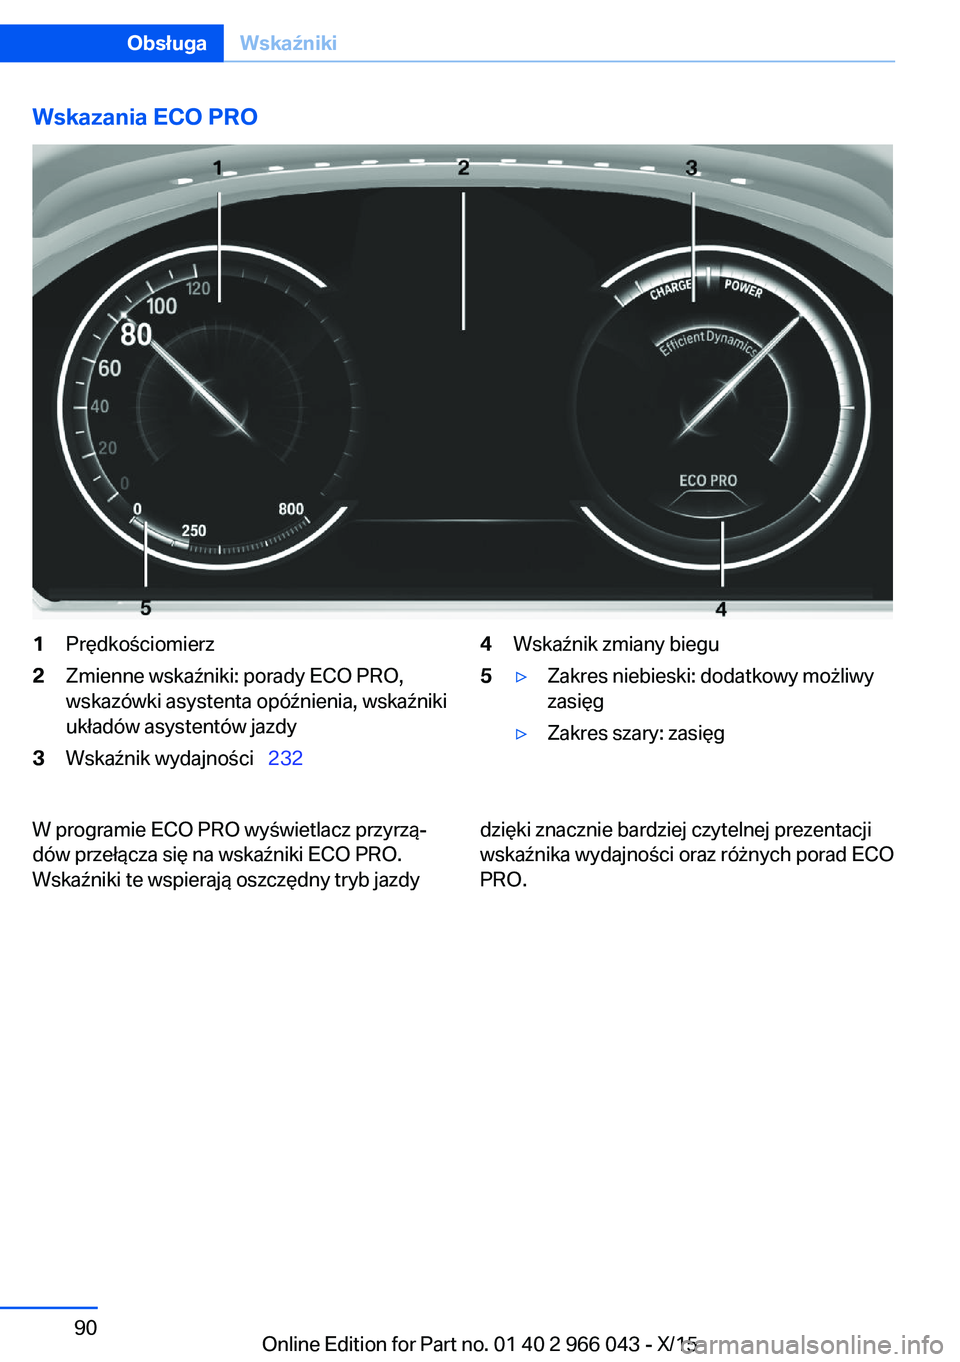 BMW X6 2016  Instrukcja obsługi (in Polish) Wskazania ECO PRO1Prędkościomierz2Zmienne wskaźniki: porady ECO PRO,
wskazówki asystenta opóźnienia, wskaźniki
układów asystentów jazdy3Wskaźnik wydajności   2324Wskaźnik zmiany biegu